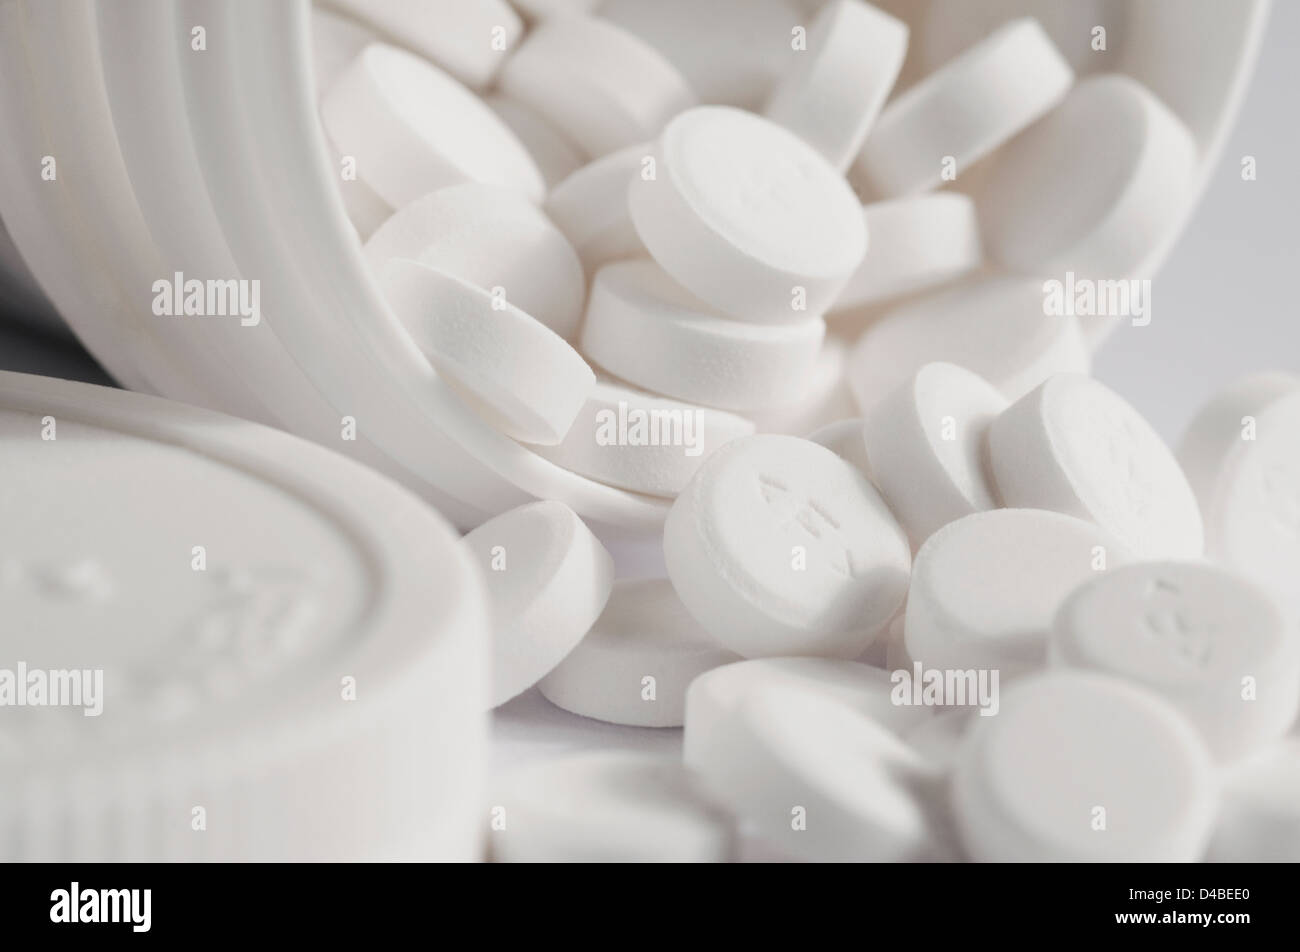 les comprimés d'aspirine débordent du contenant blanc Banque D'Images